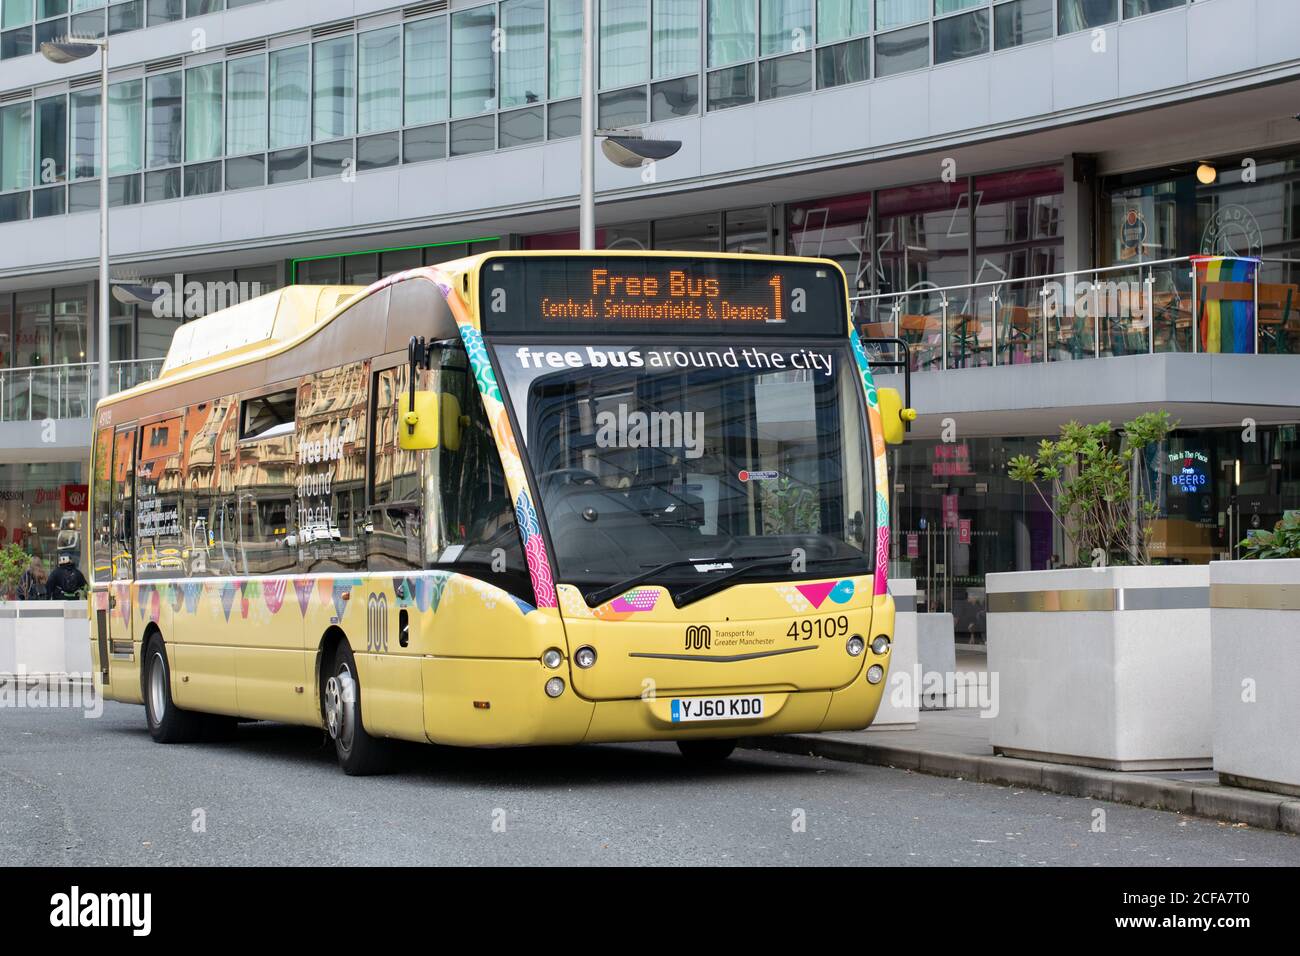 Kostenloser Busservice am Bahnhof Manchester Piccadilly in Großbritannien. Gelber Bus mit geschwungener Fassade des Bürogebäudes im Hintergrund. Elektrischer Diesel-Hybrid. Stockfoto